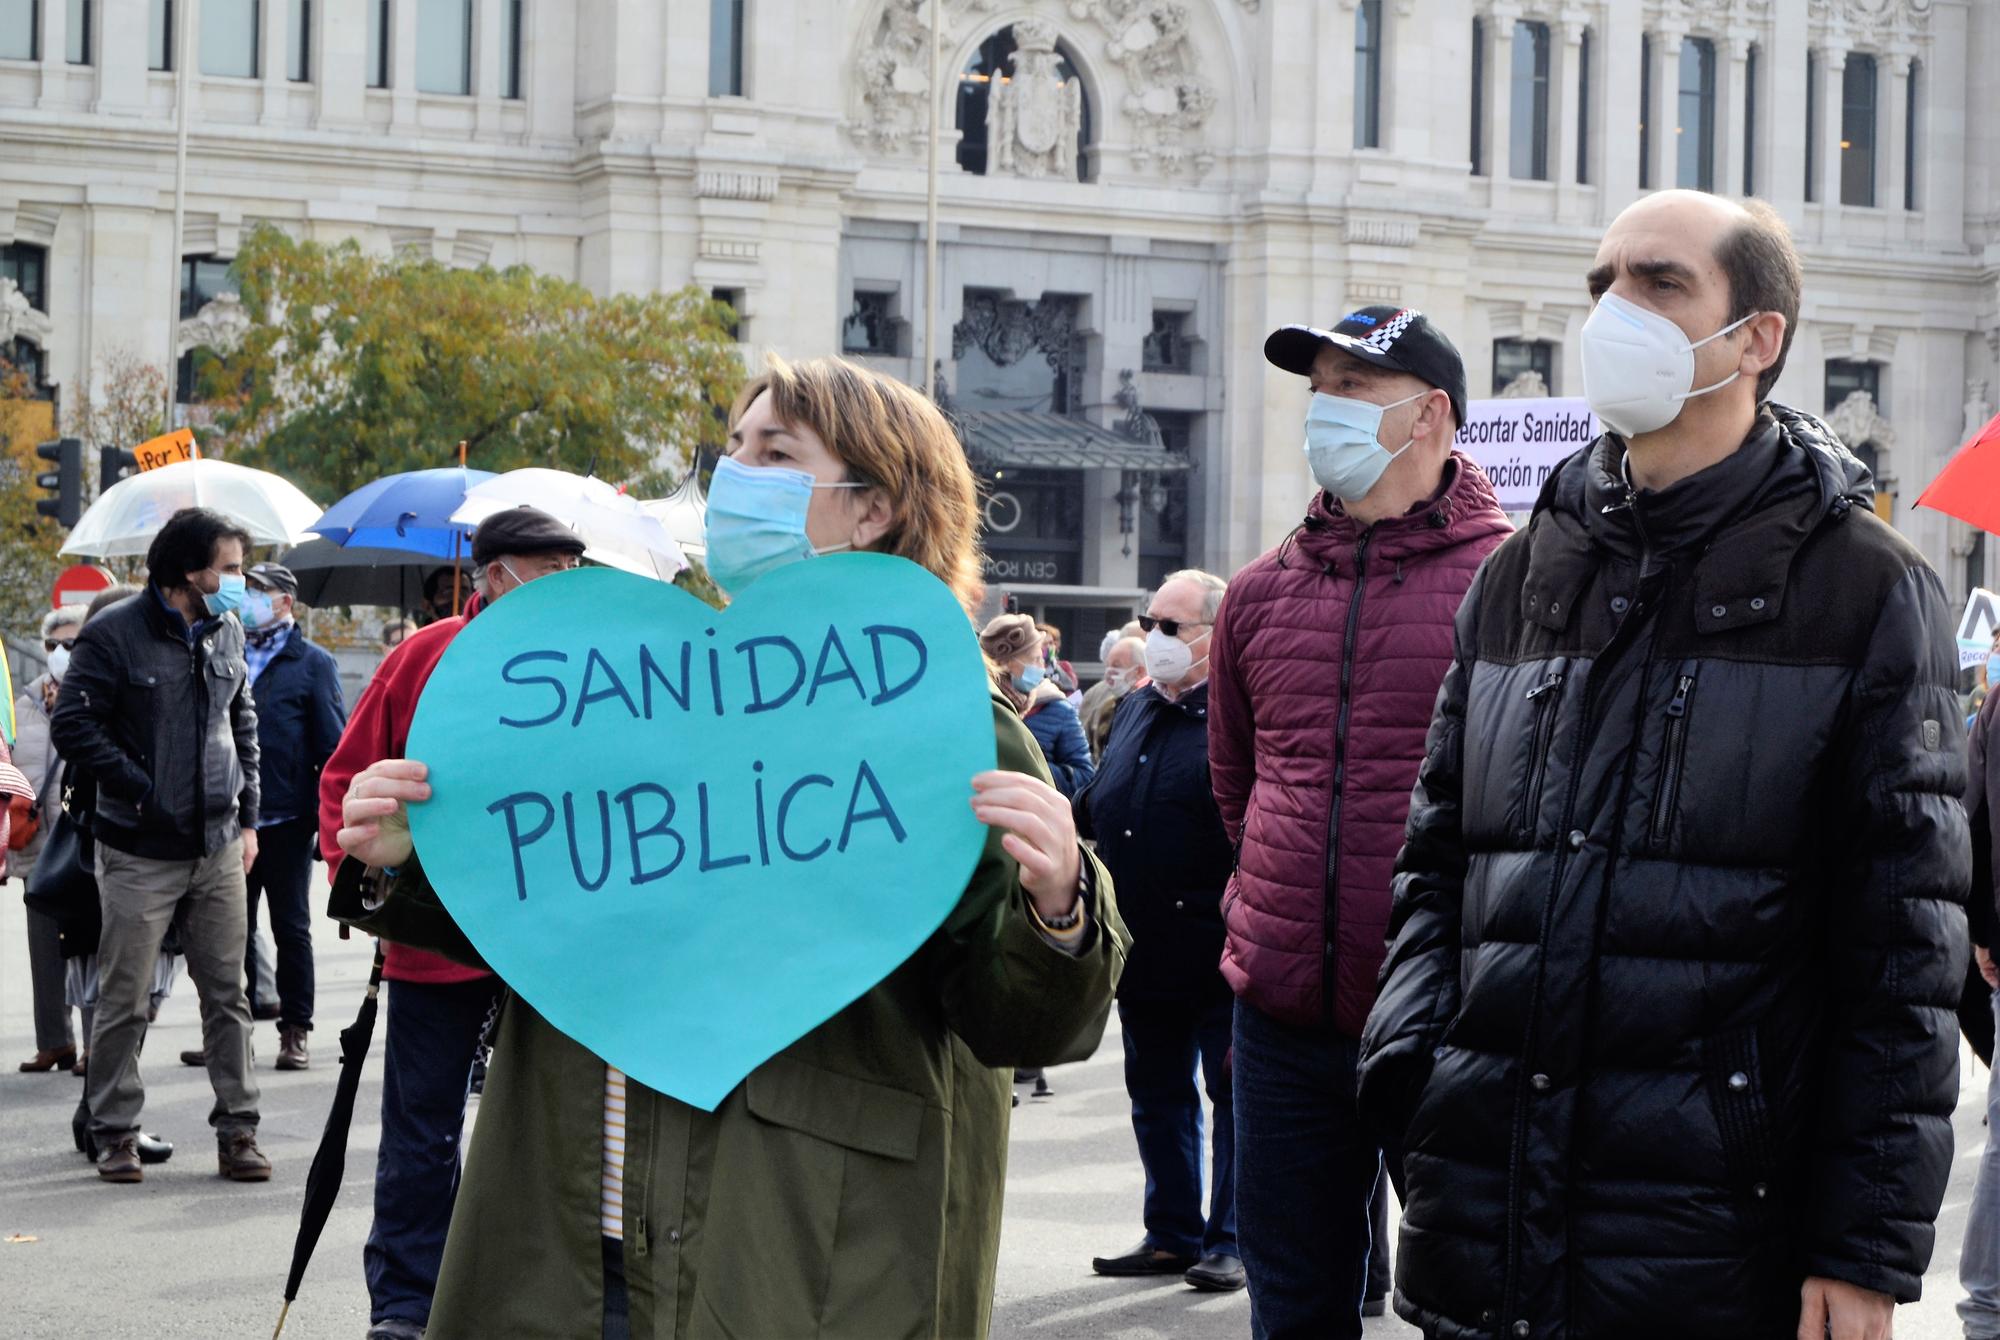 Sanidad Pública Concentración Madrid 29 Noviembre 2020 2